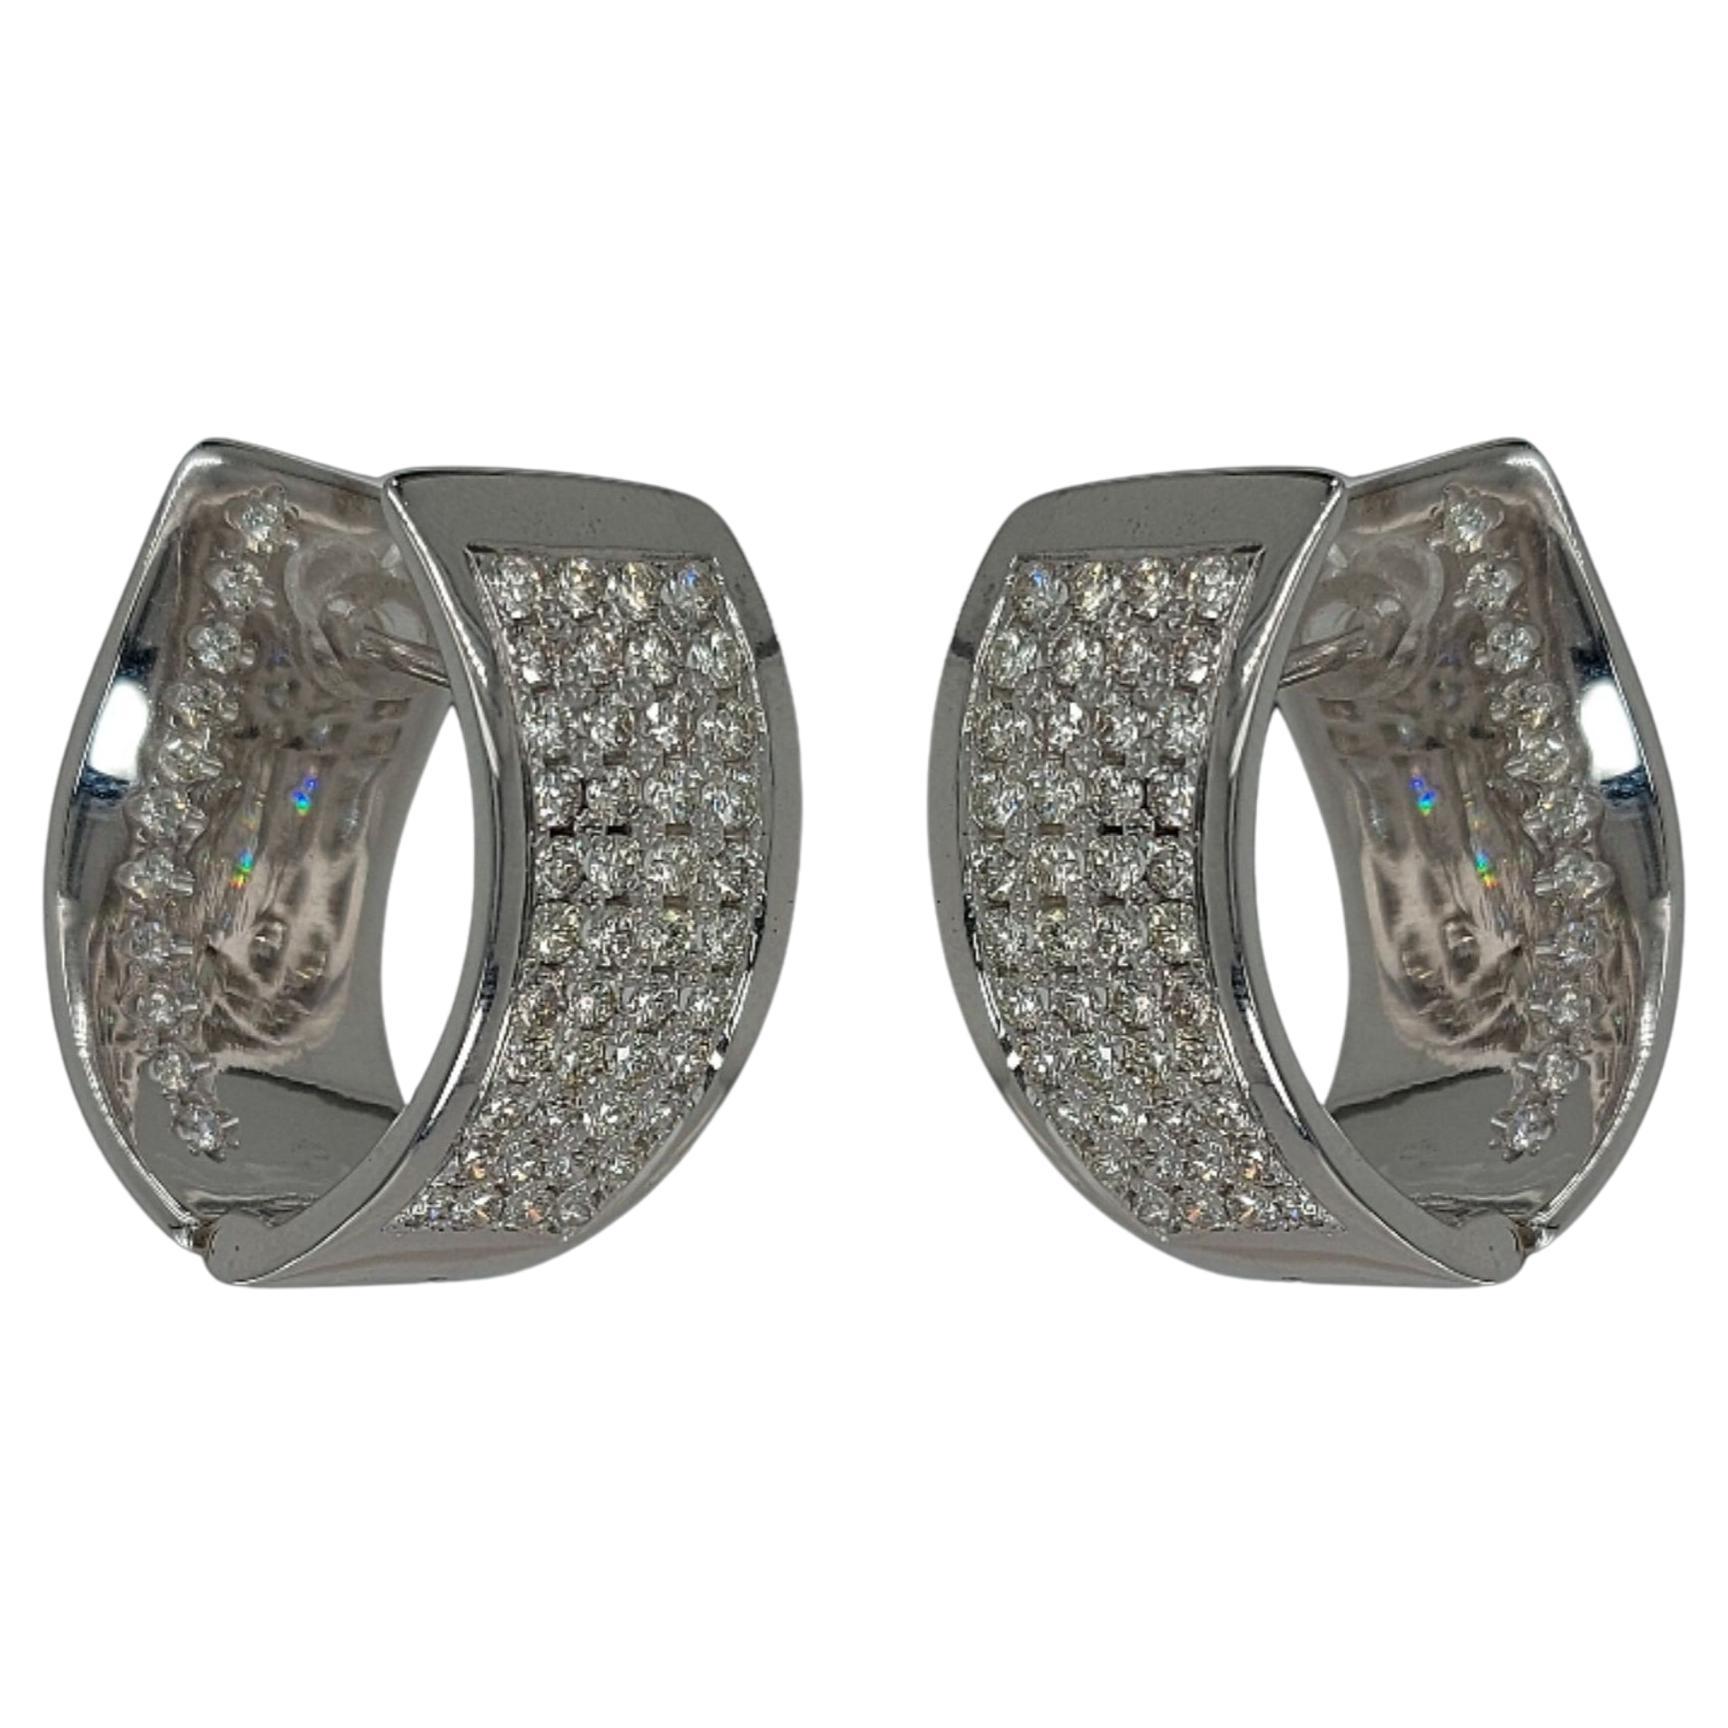 Boucles d'oreilles à clip en or blanc de 18 carats avec diamants

Diamants : diamants taille brillant,  ca. 3.30ct

Matériau : Or blanc 18 carats

Mesures : 13 mm x 25 mm

Poids total : 18,7 grammes / 12 dwt / 0,655 oz
